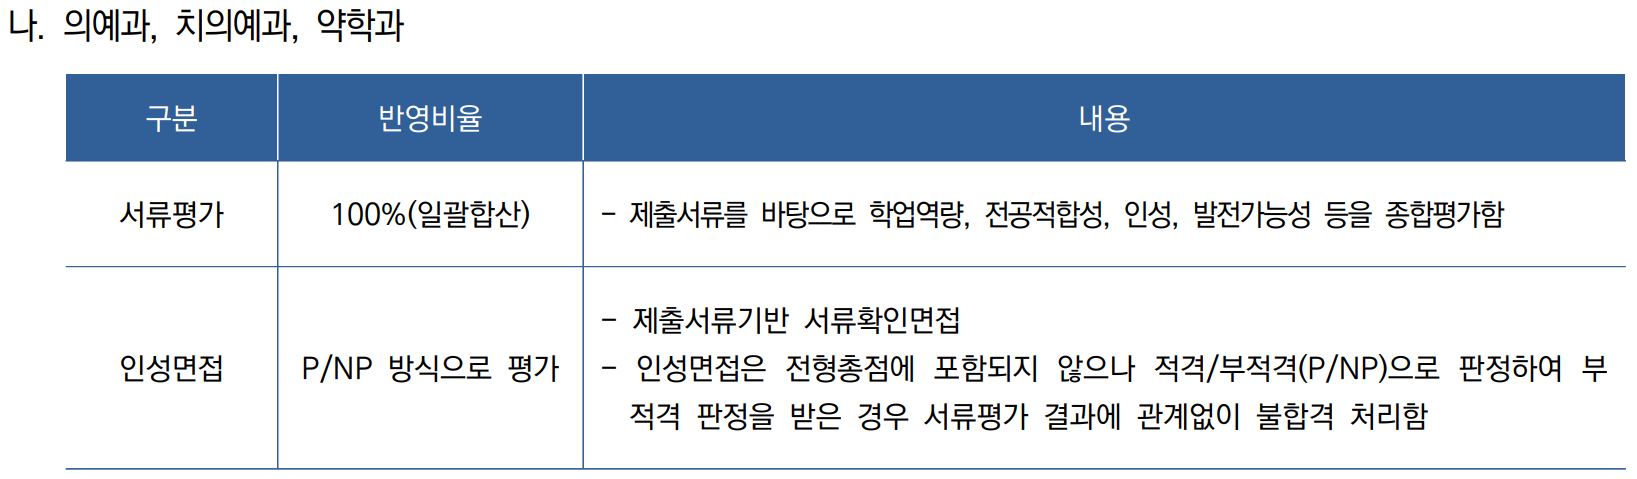 연세대 외국인전형 전형방법  연세대 일반학과 외국인전형 전형방법 Yonsei Univ. Admission for Foreigners_04_전형방법.JPG